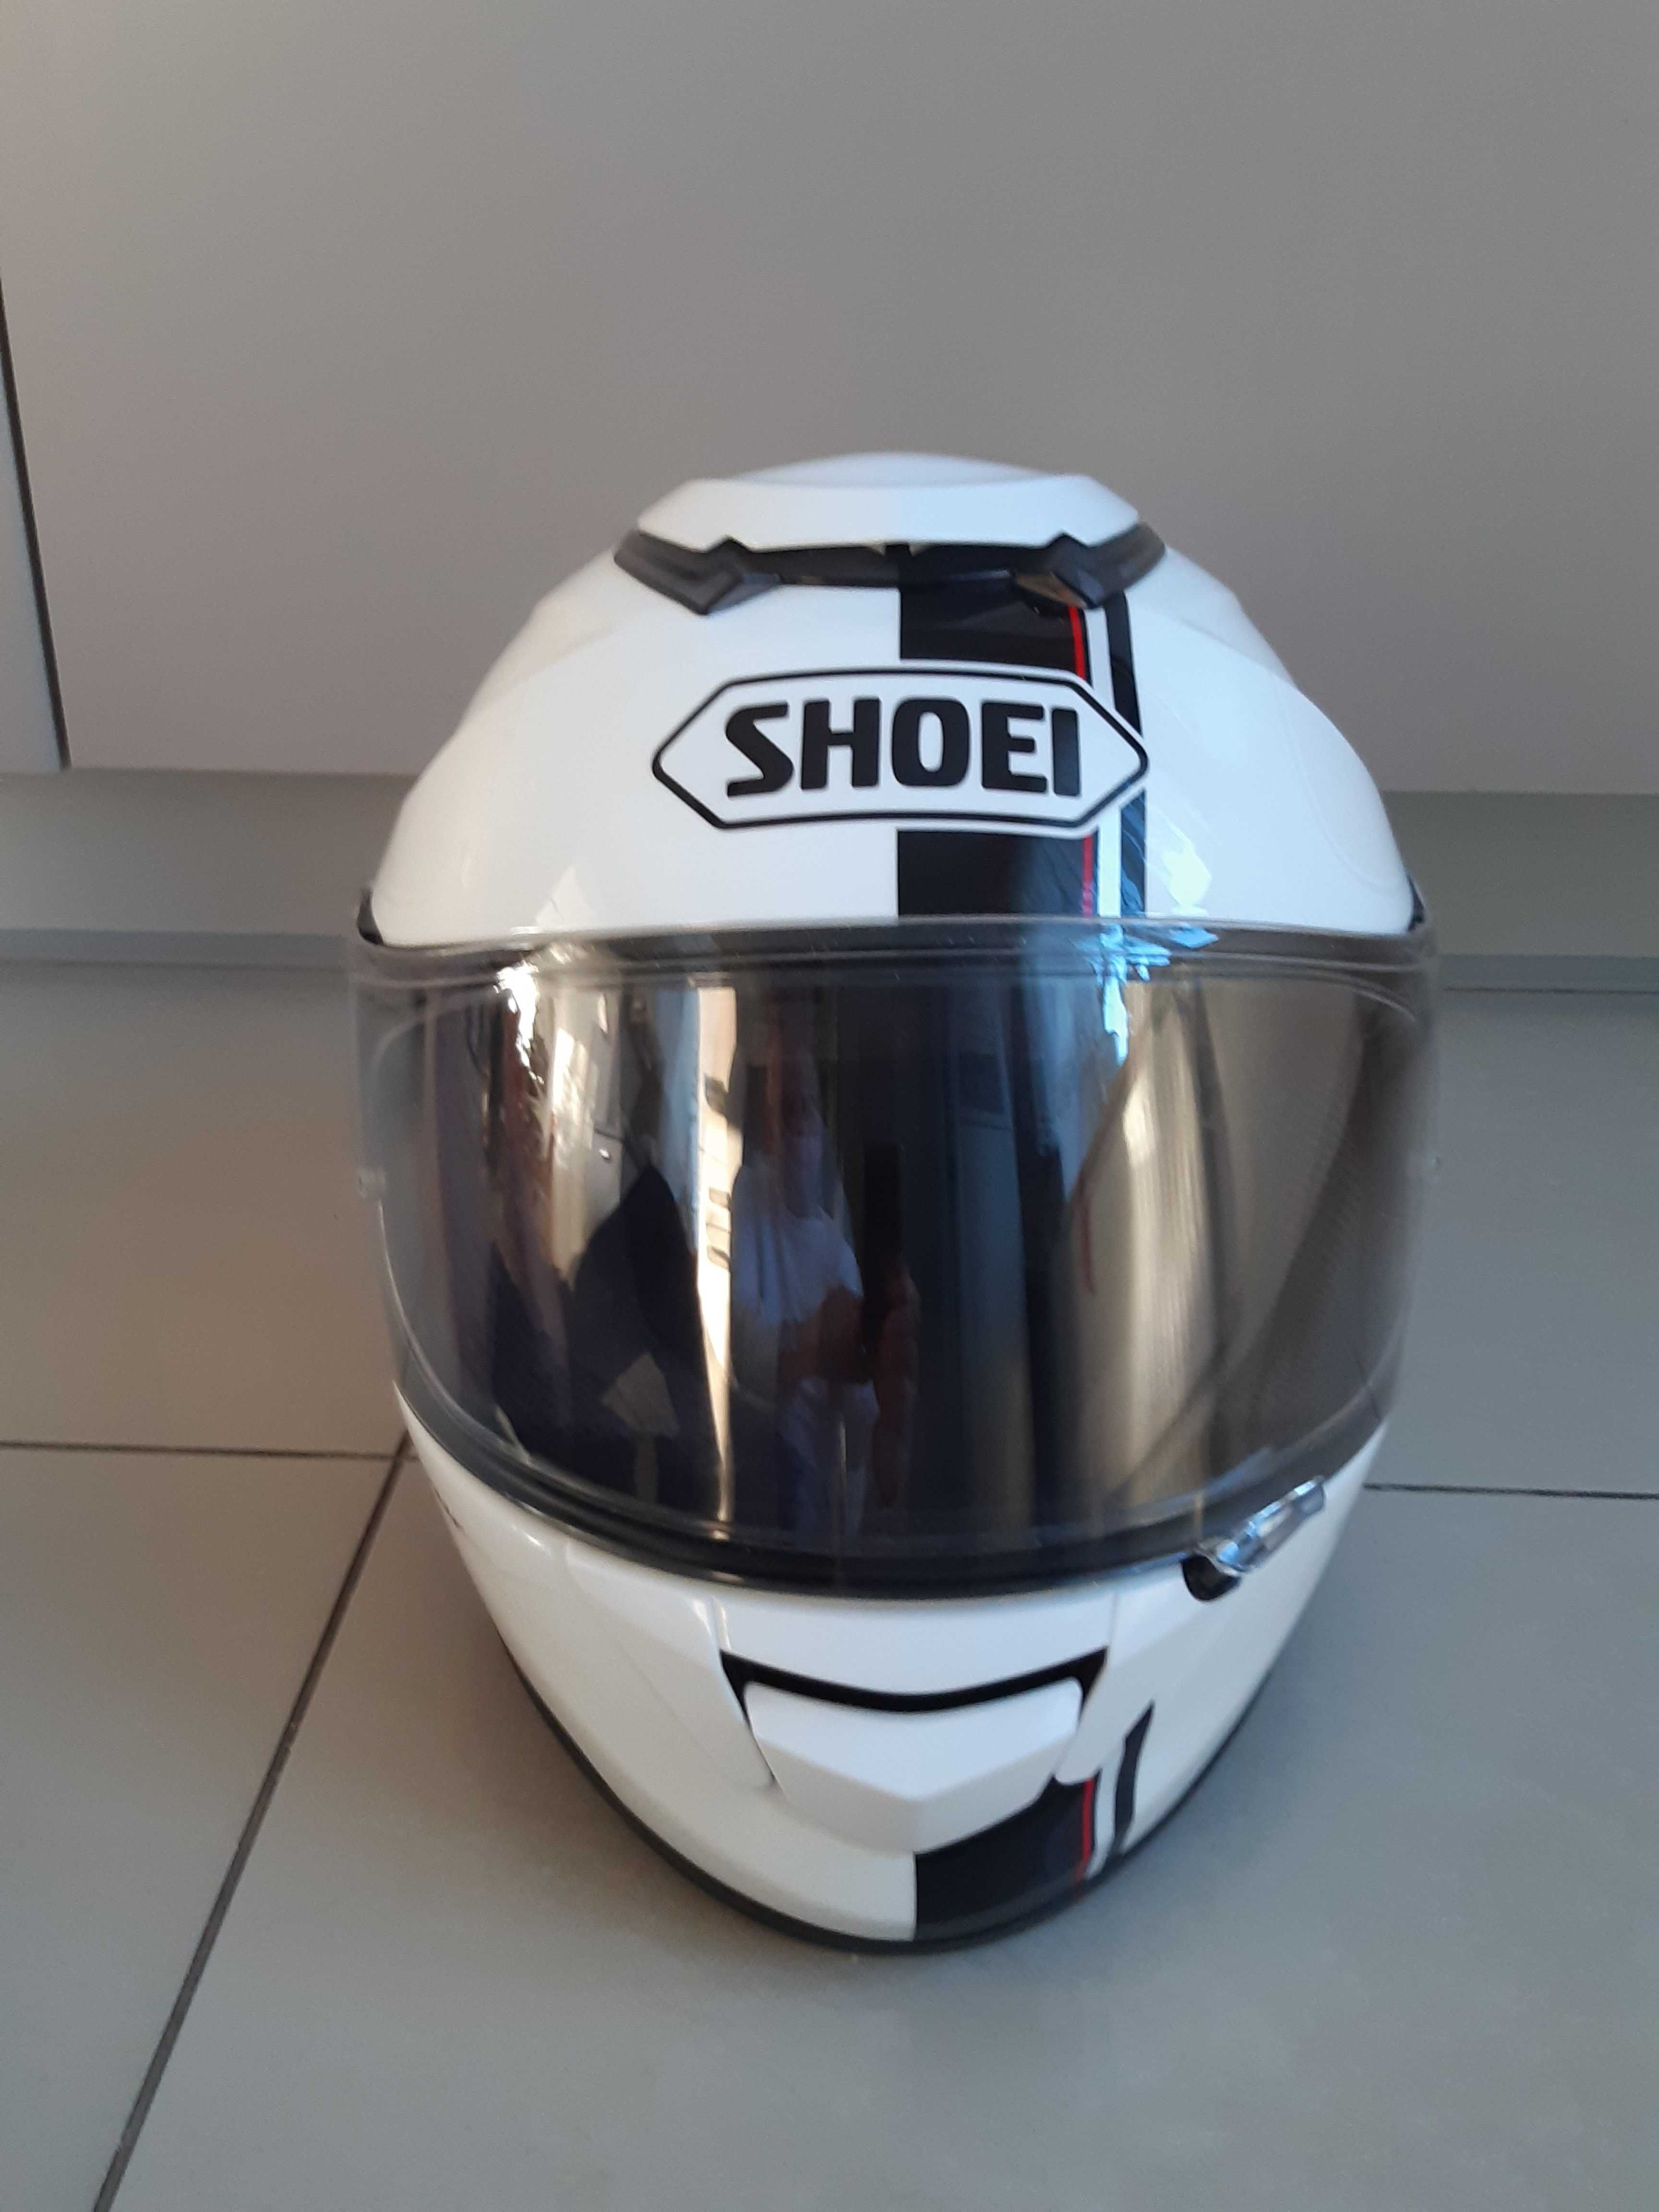 SHOEI GTR - nowy kask motobike, Shoei marka japonska, 100% oryginal